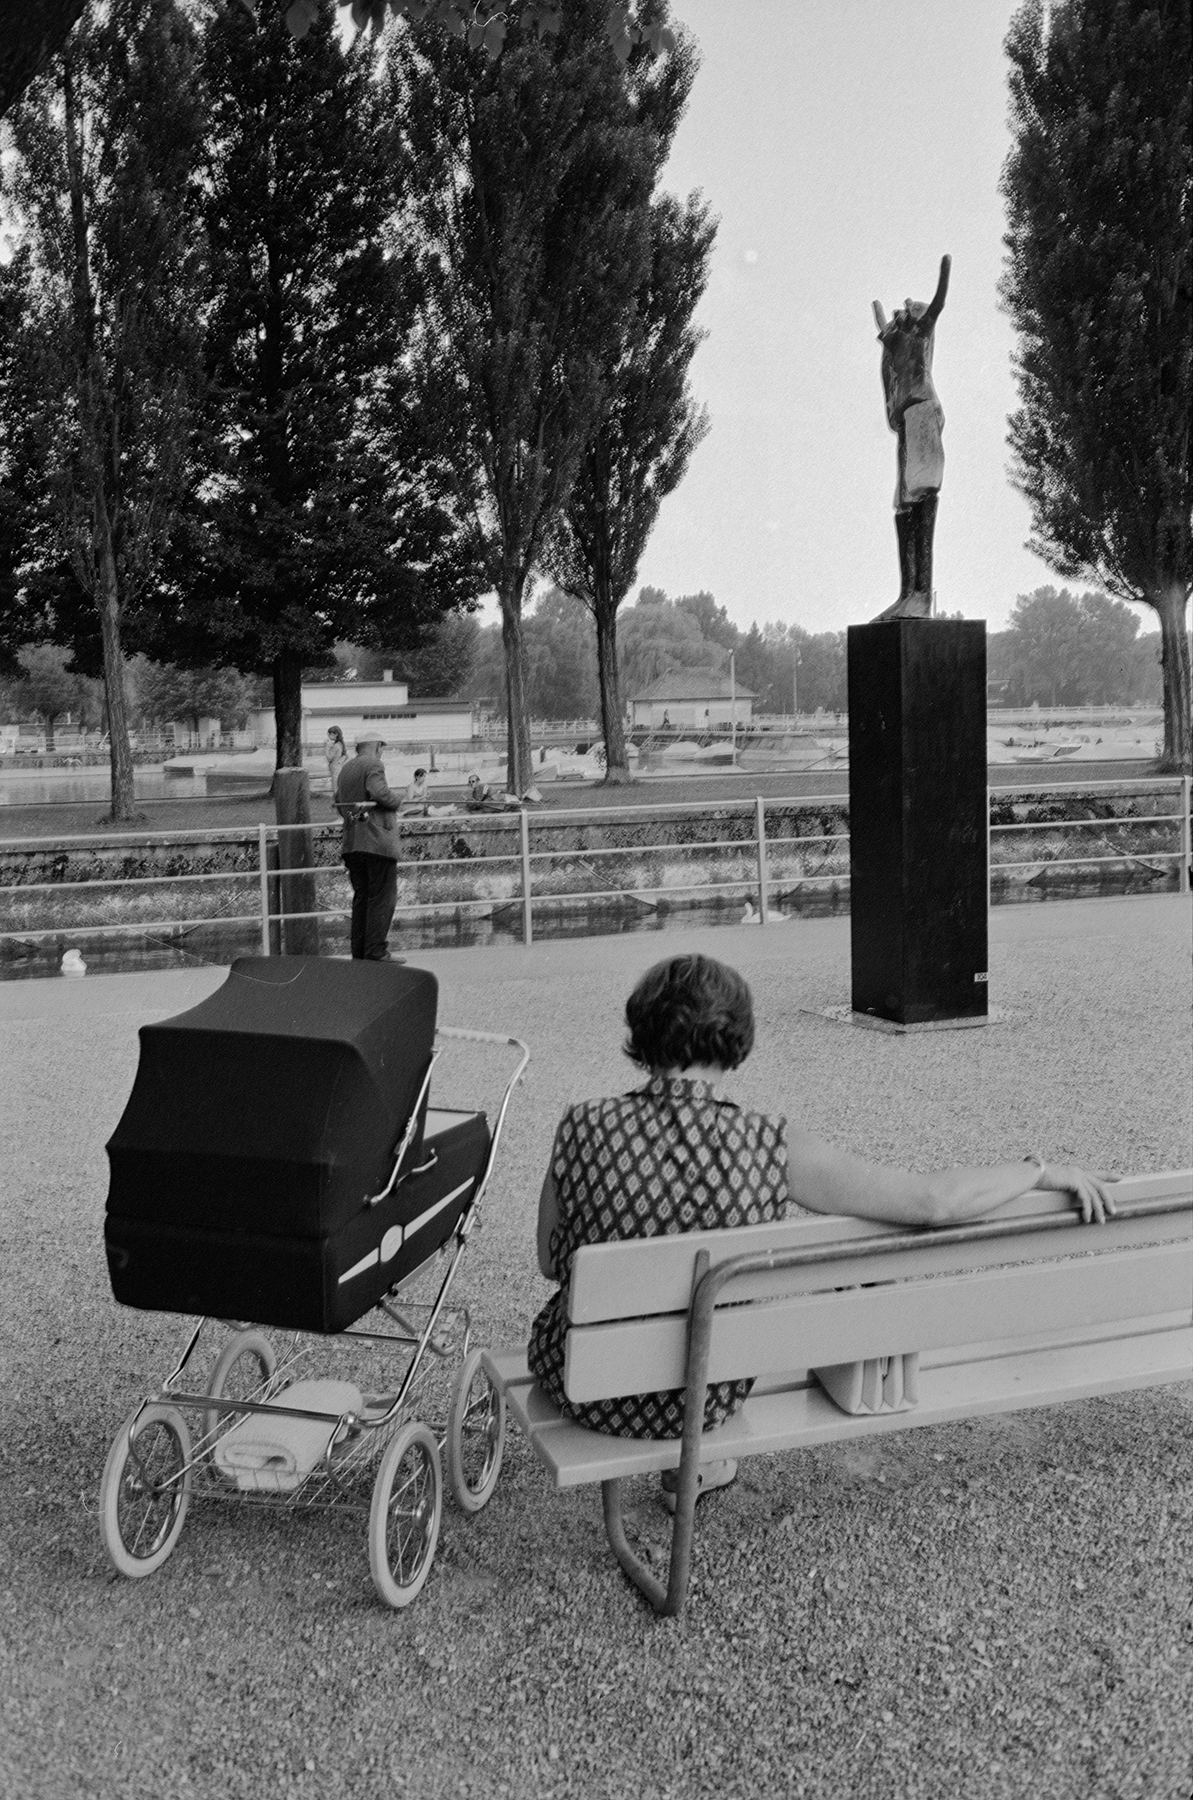 Eine Szene mit der Skulptur Redner vom Schweizer Bildhauer Kurt Laurenz Metzler im Hintergrund, aufgenommen im Jahr 1970. © ETH-Bibliothek Zürich, Bildarchiv / Fotograf: Baumann, Heinz / Com_L19-0418-0003-0003